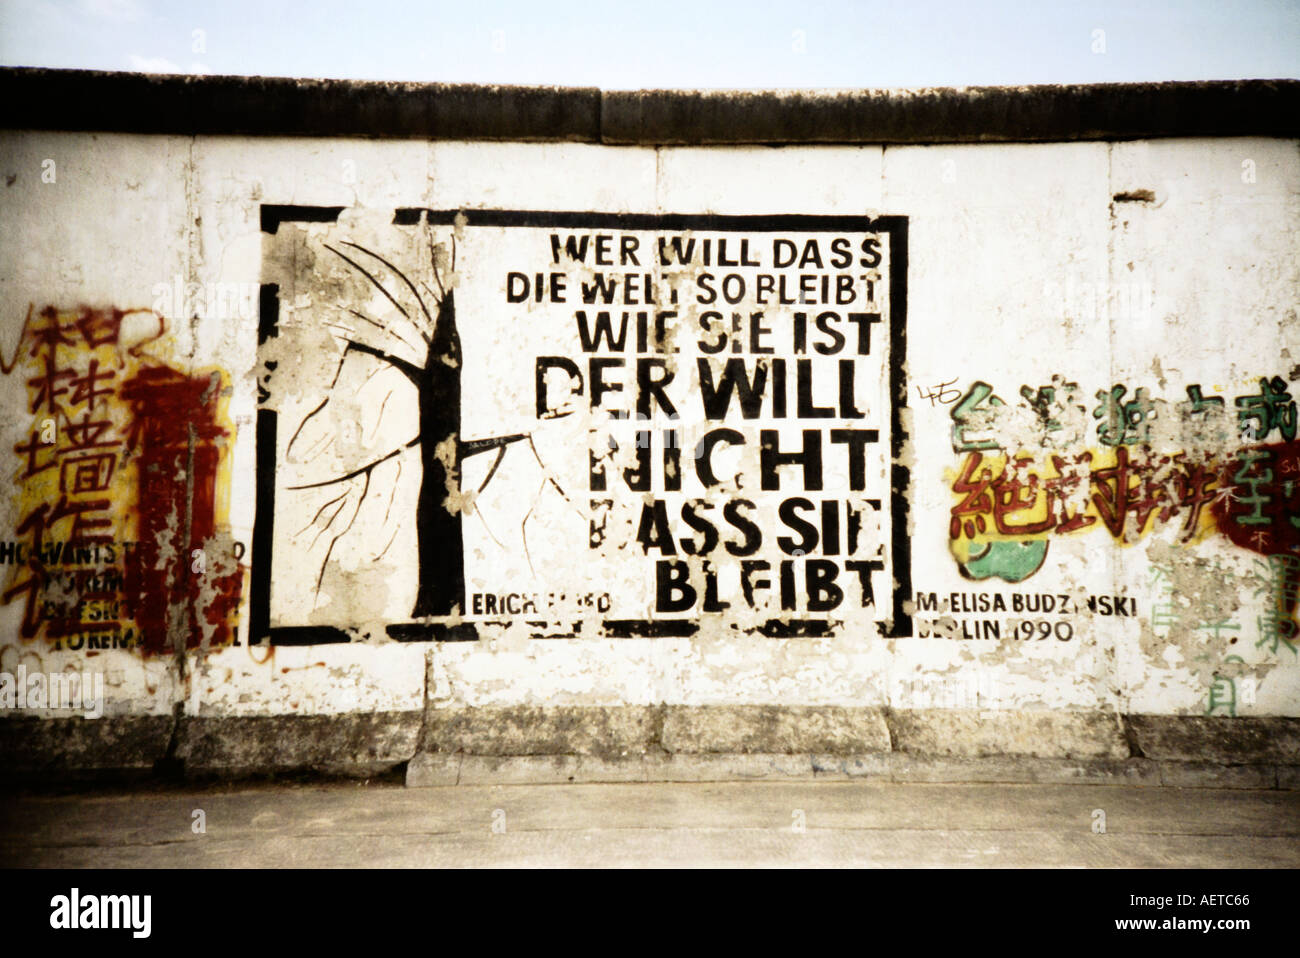 Wandbild Berliner Mauer East Side Gallery Berlin Gedicht von Erich Fried Deutschland Europa - Bild auf einer Lomo-Kamera aufgenommen Stockfoto